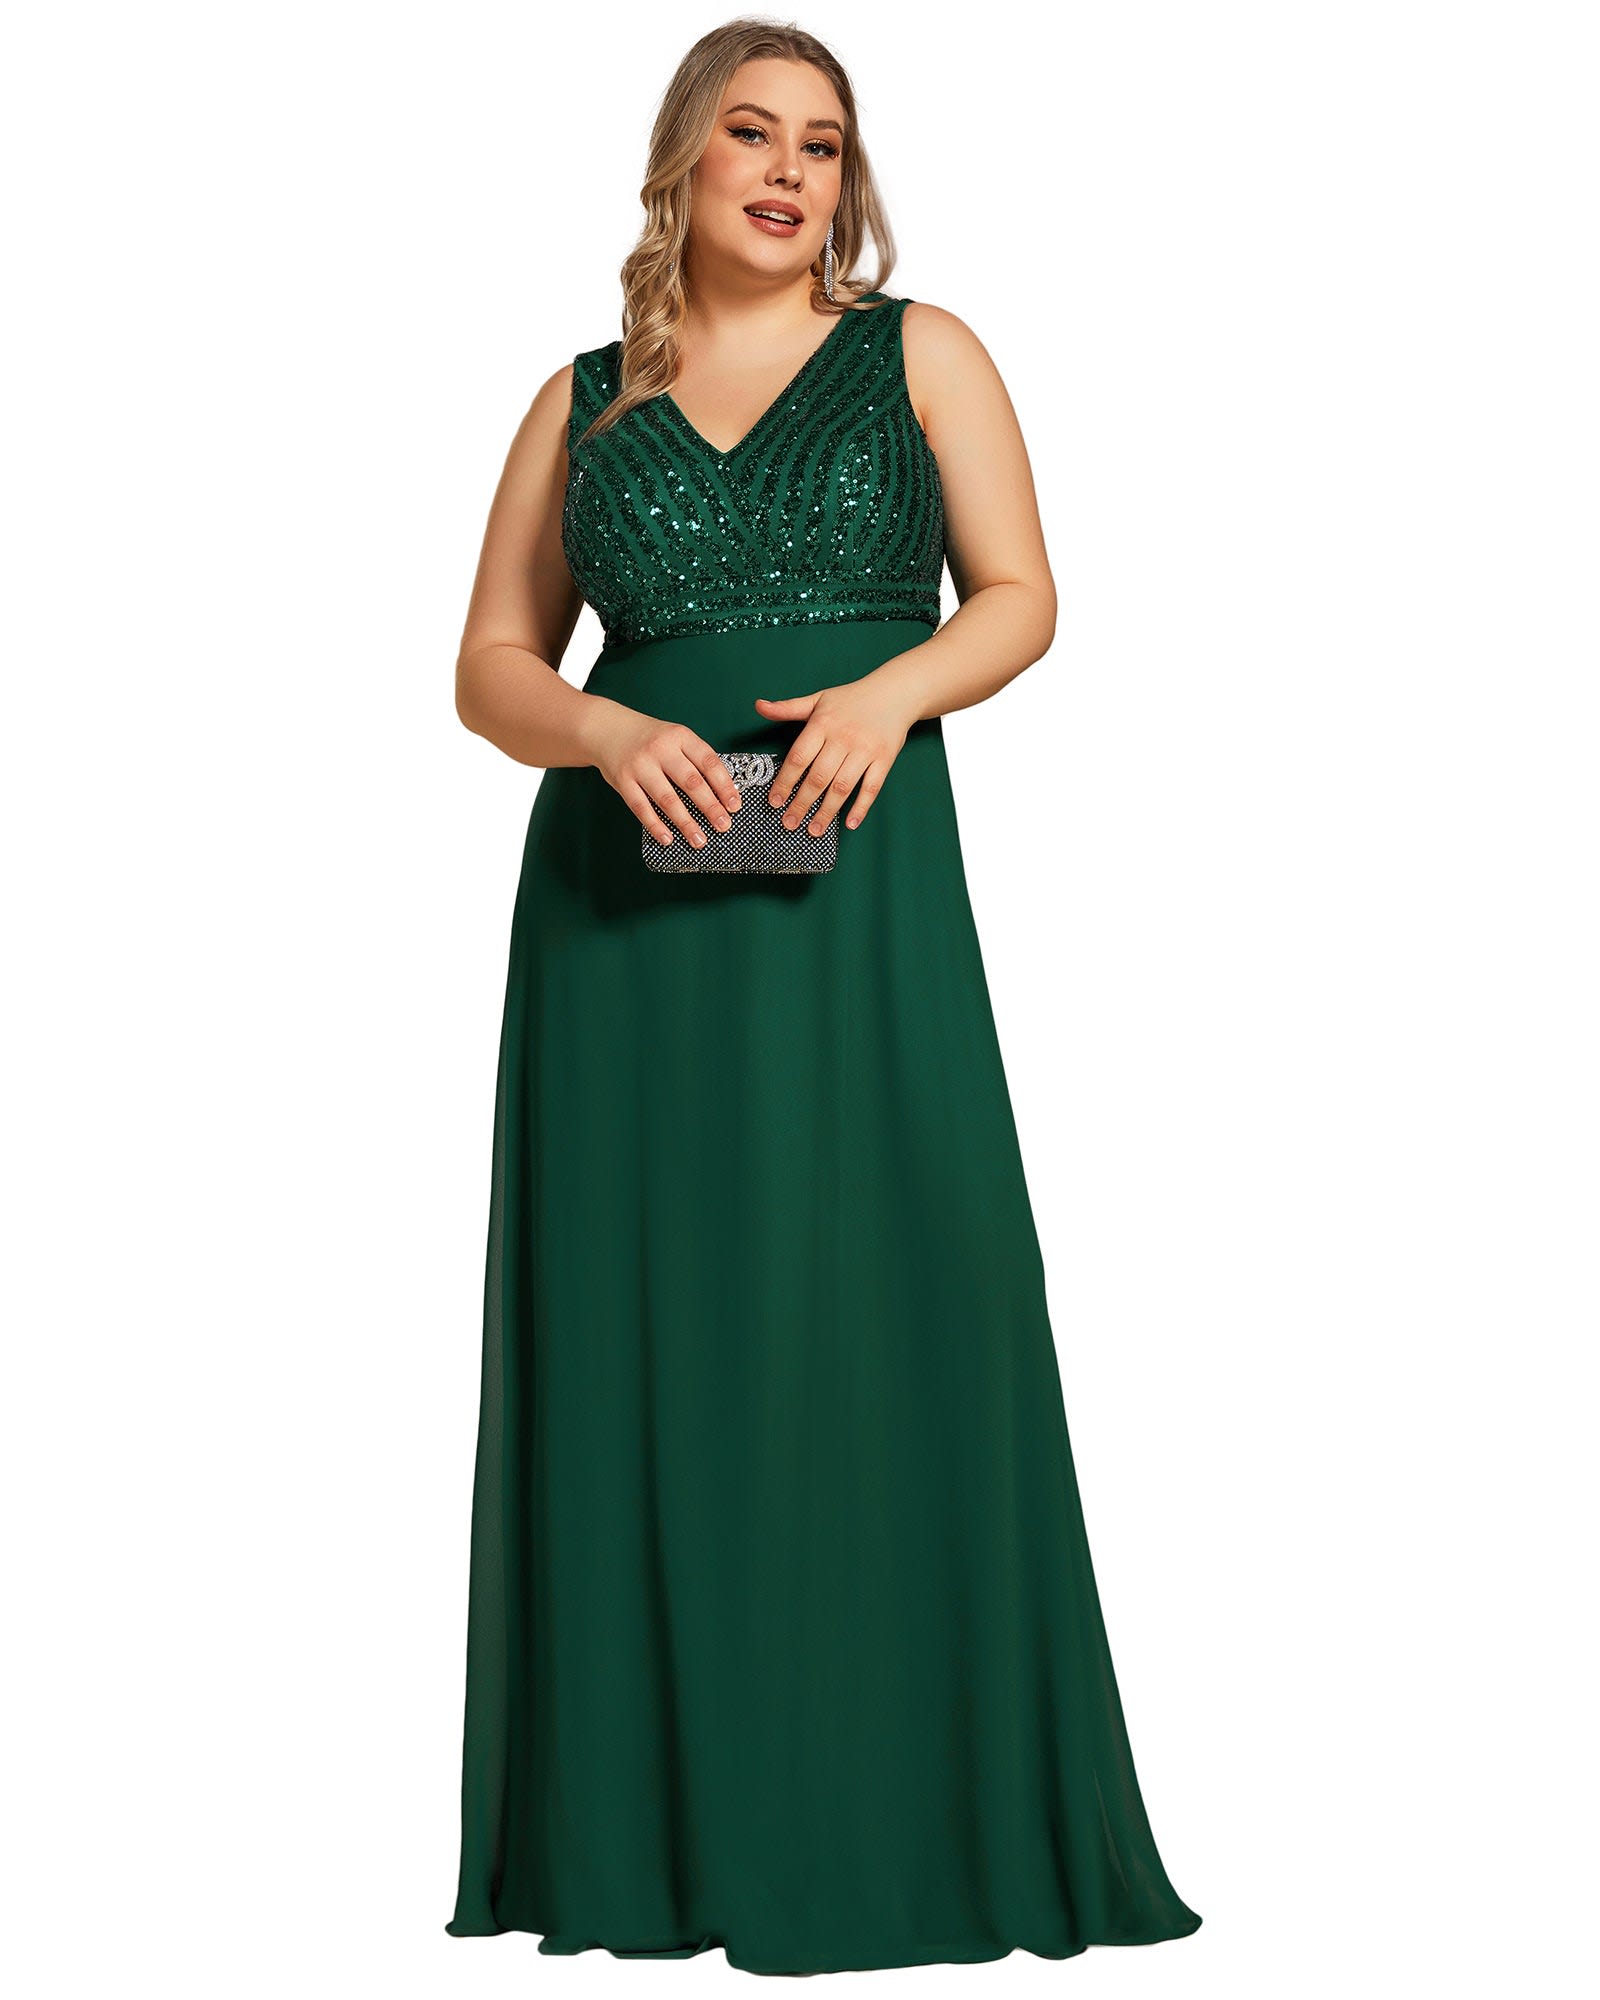 Pin by Femme Fatale on WEDDING DRESS | Green wedding dresses, Emerald  wedding dresses, Green prom dress